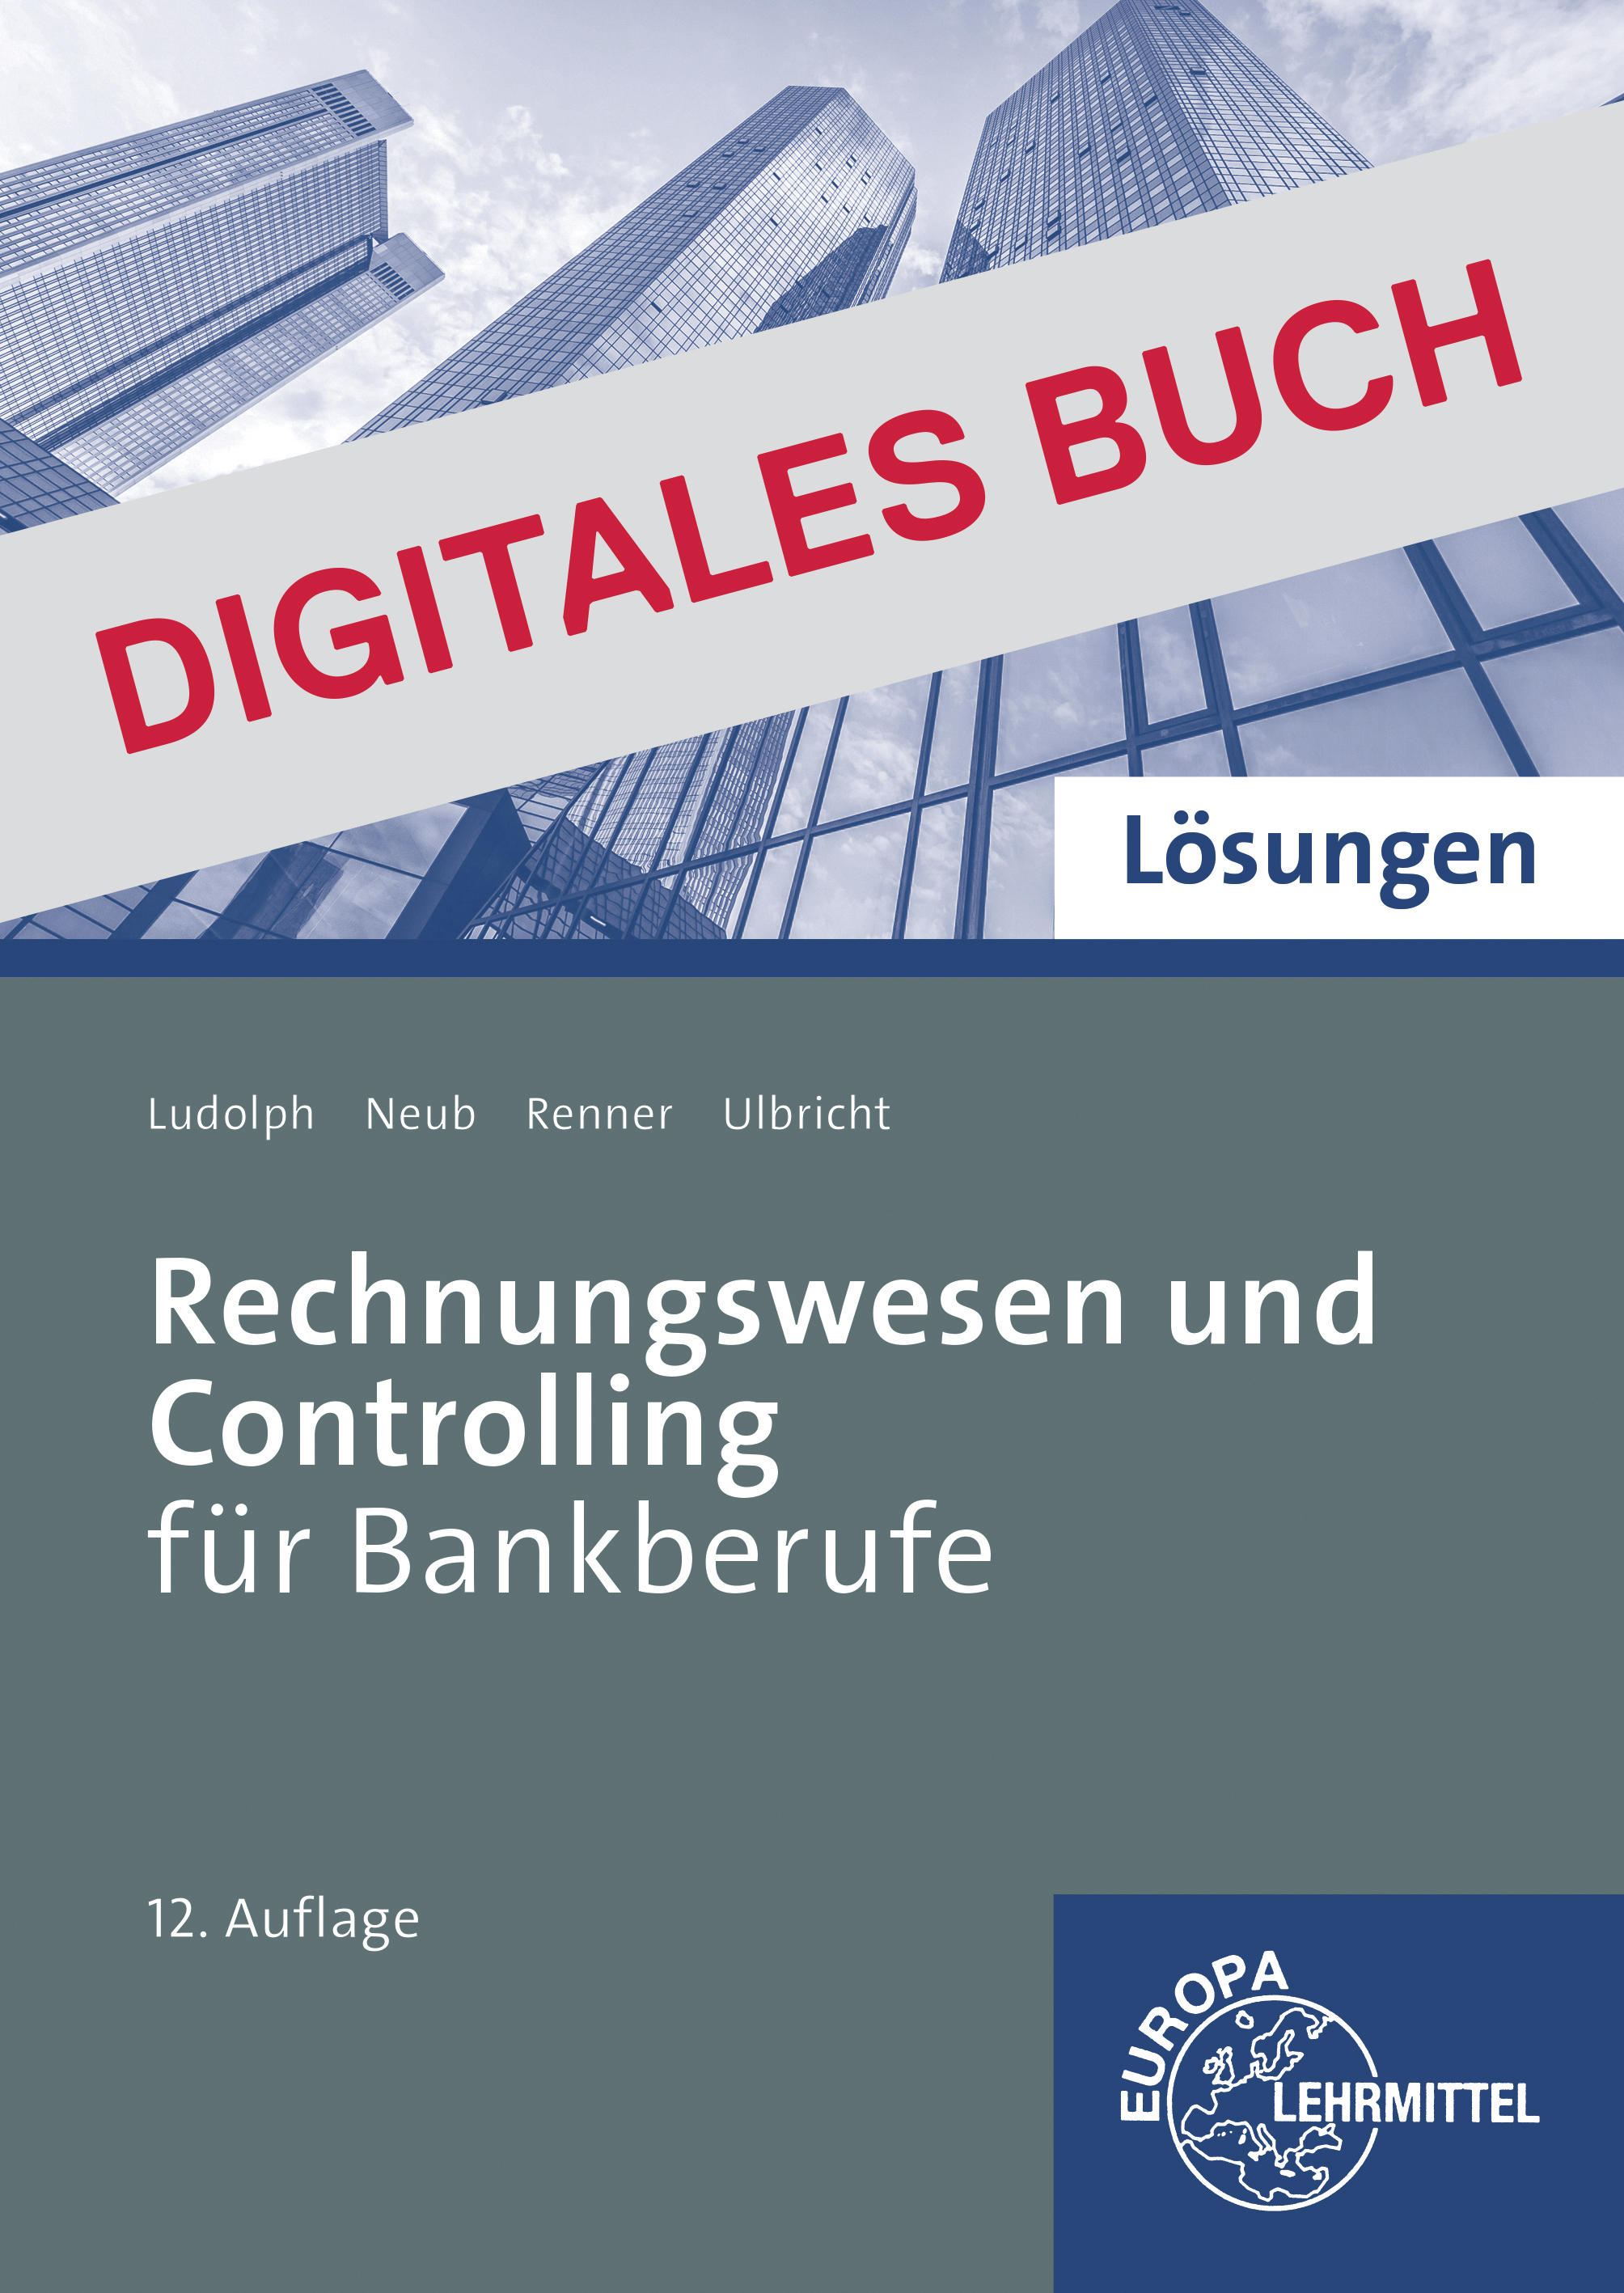 Lösungen Rechnungswesen und Controlling für Bankberufe - Digitales Buch